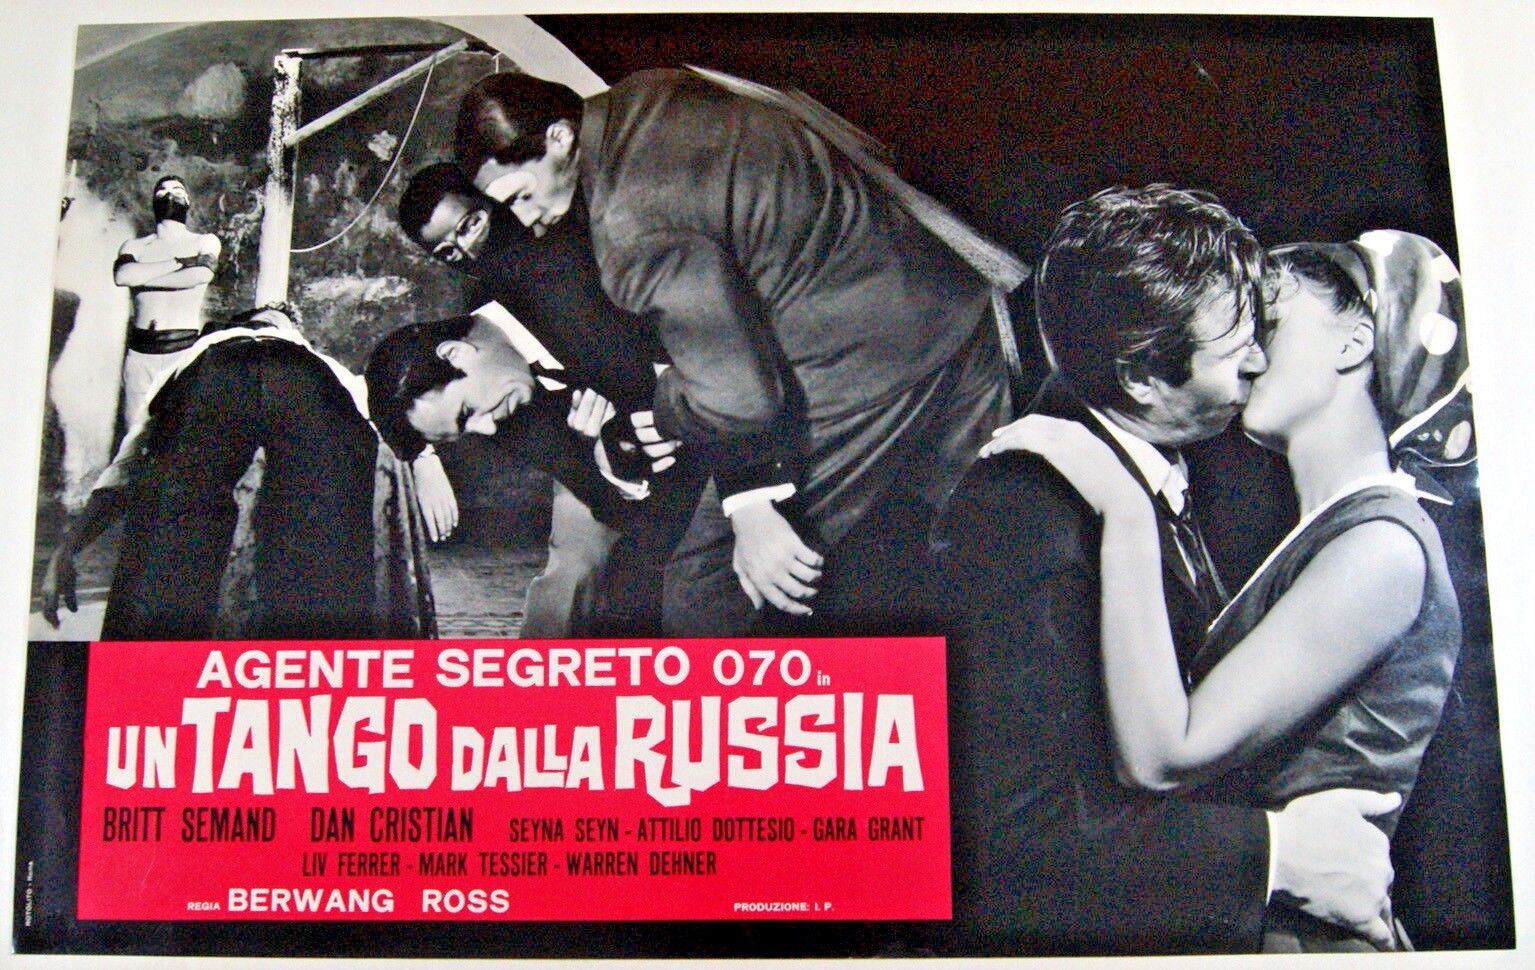 Un tango dalla Russia